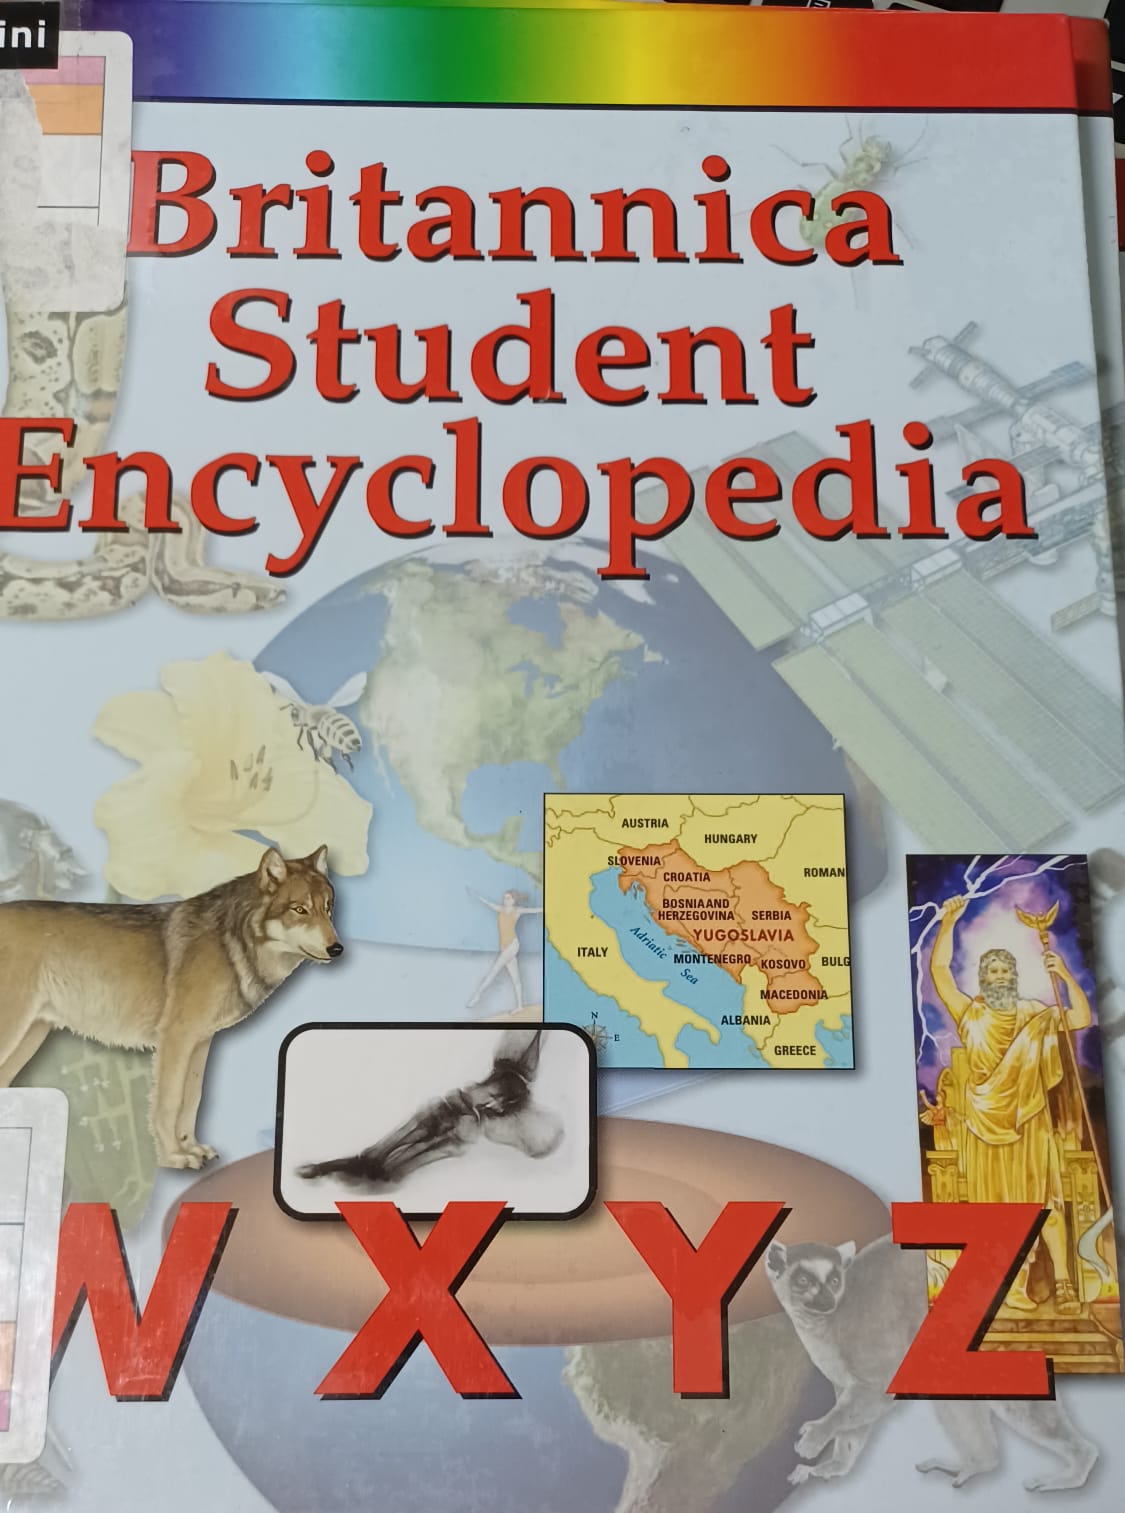 Britannica Student Encyclopedia Vol. 15 :  W X Y Z